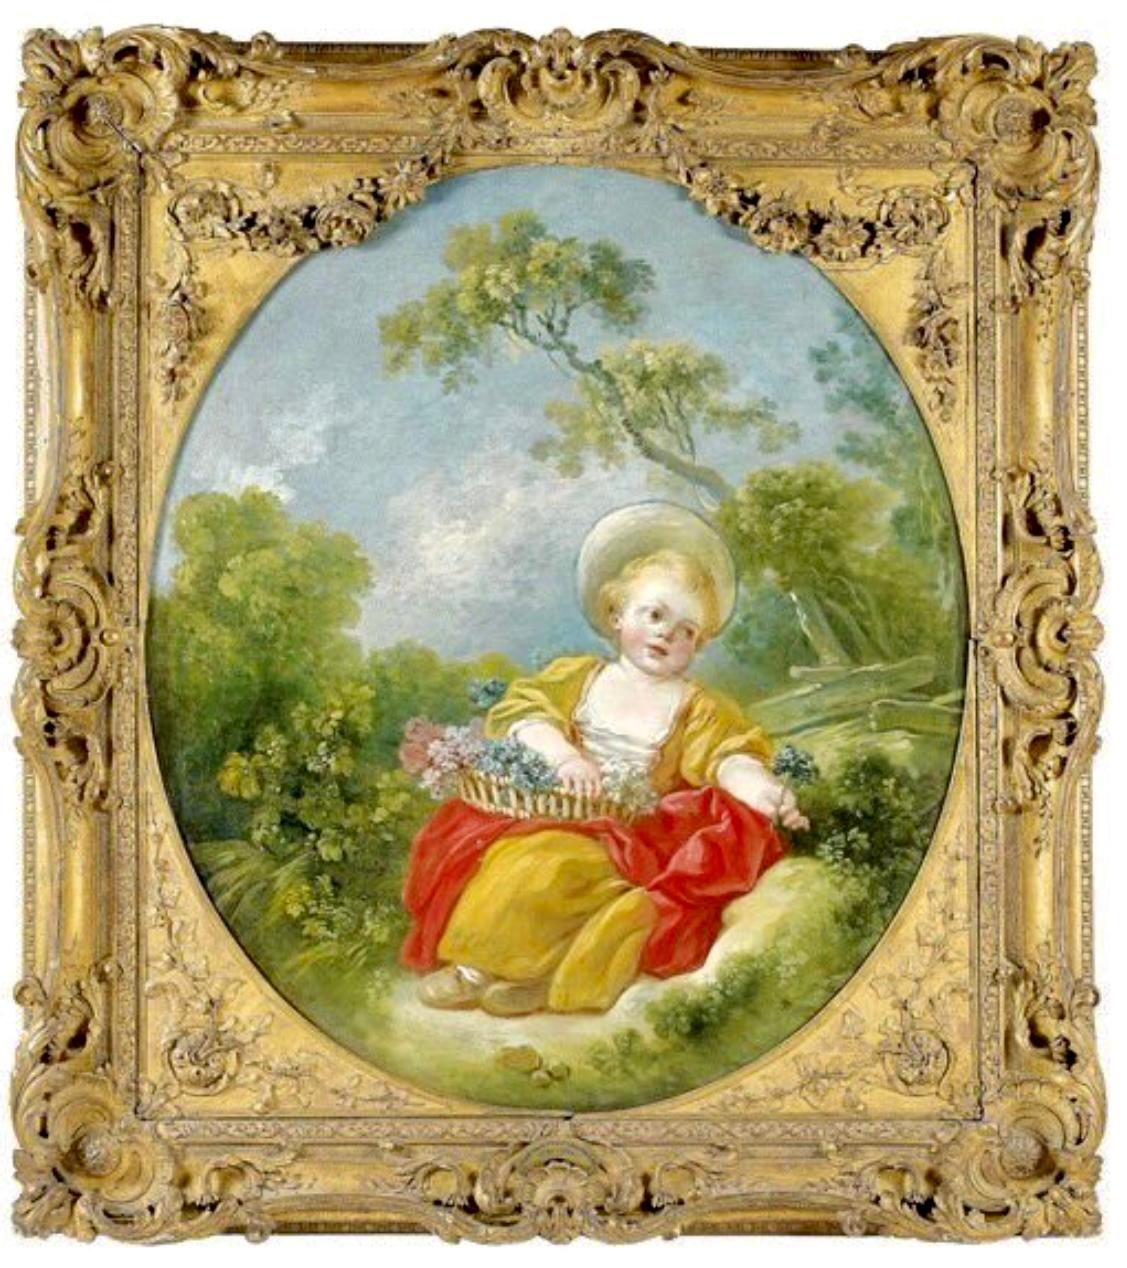 La Petite Jardinière - Painting by Jean-Honoré Fragonard